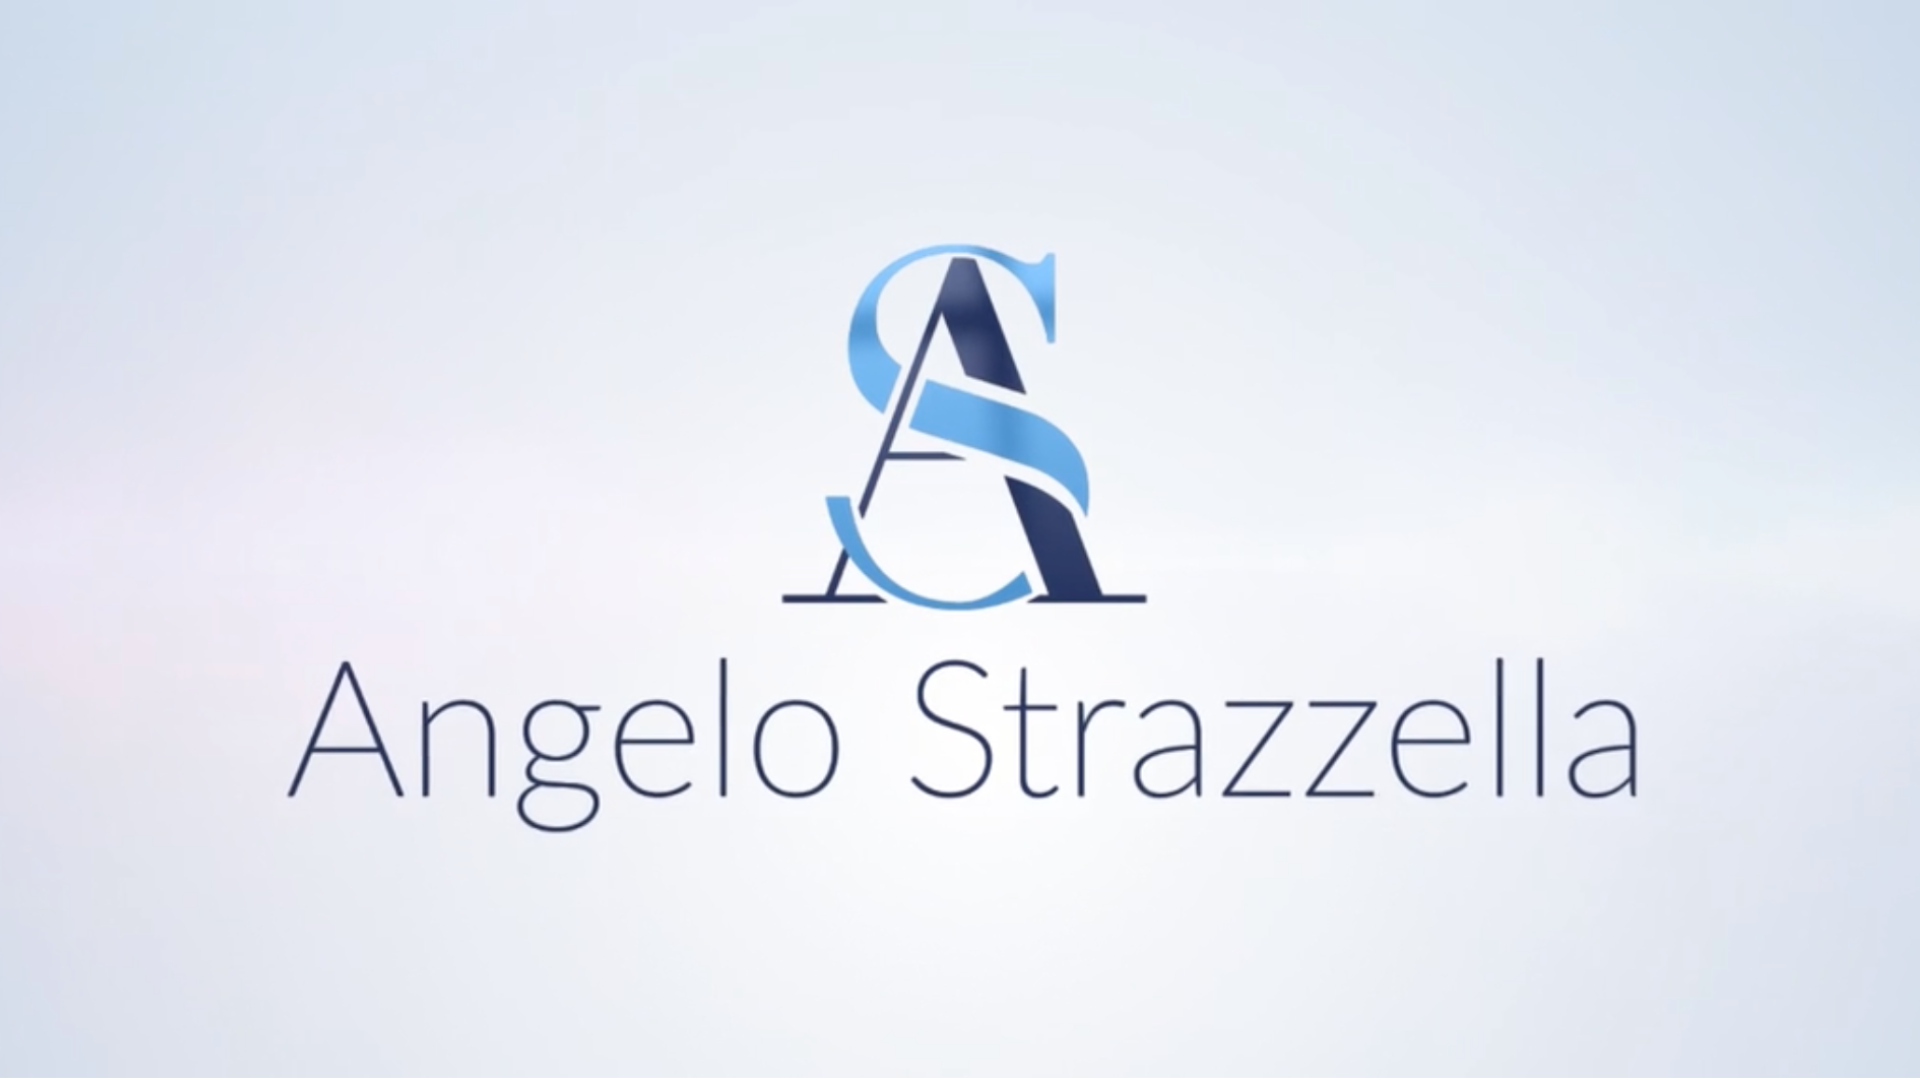 Angelo strazzella cover web